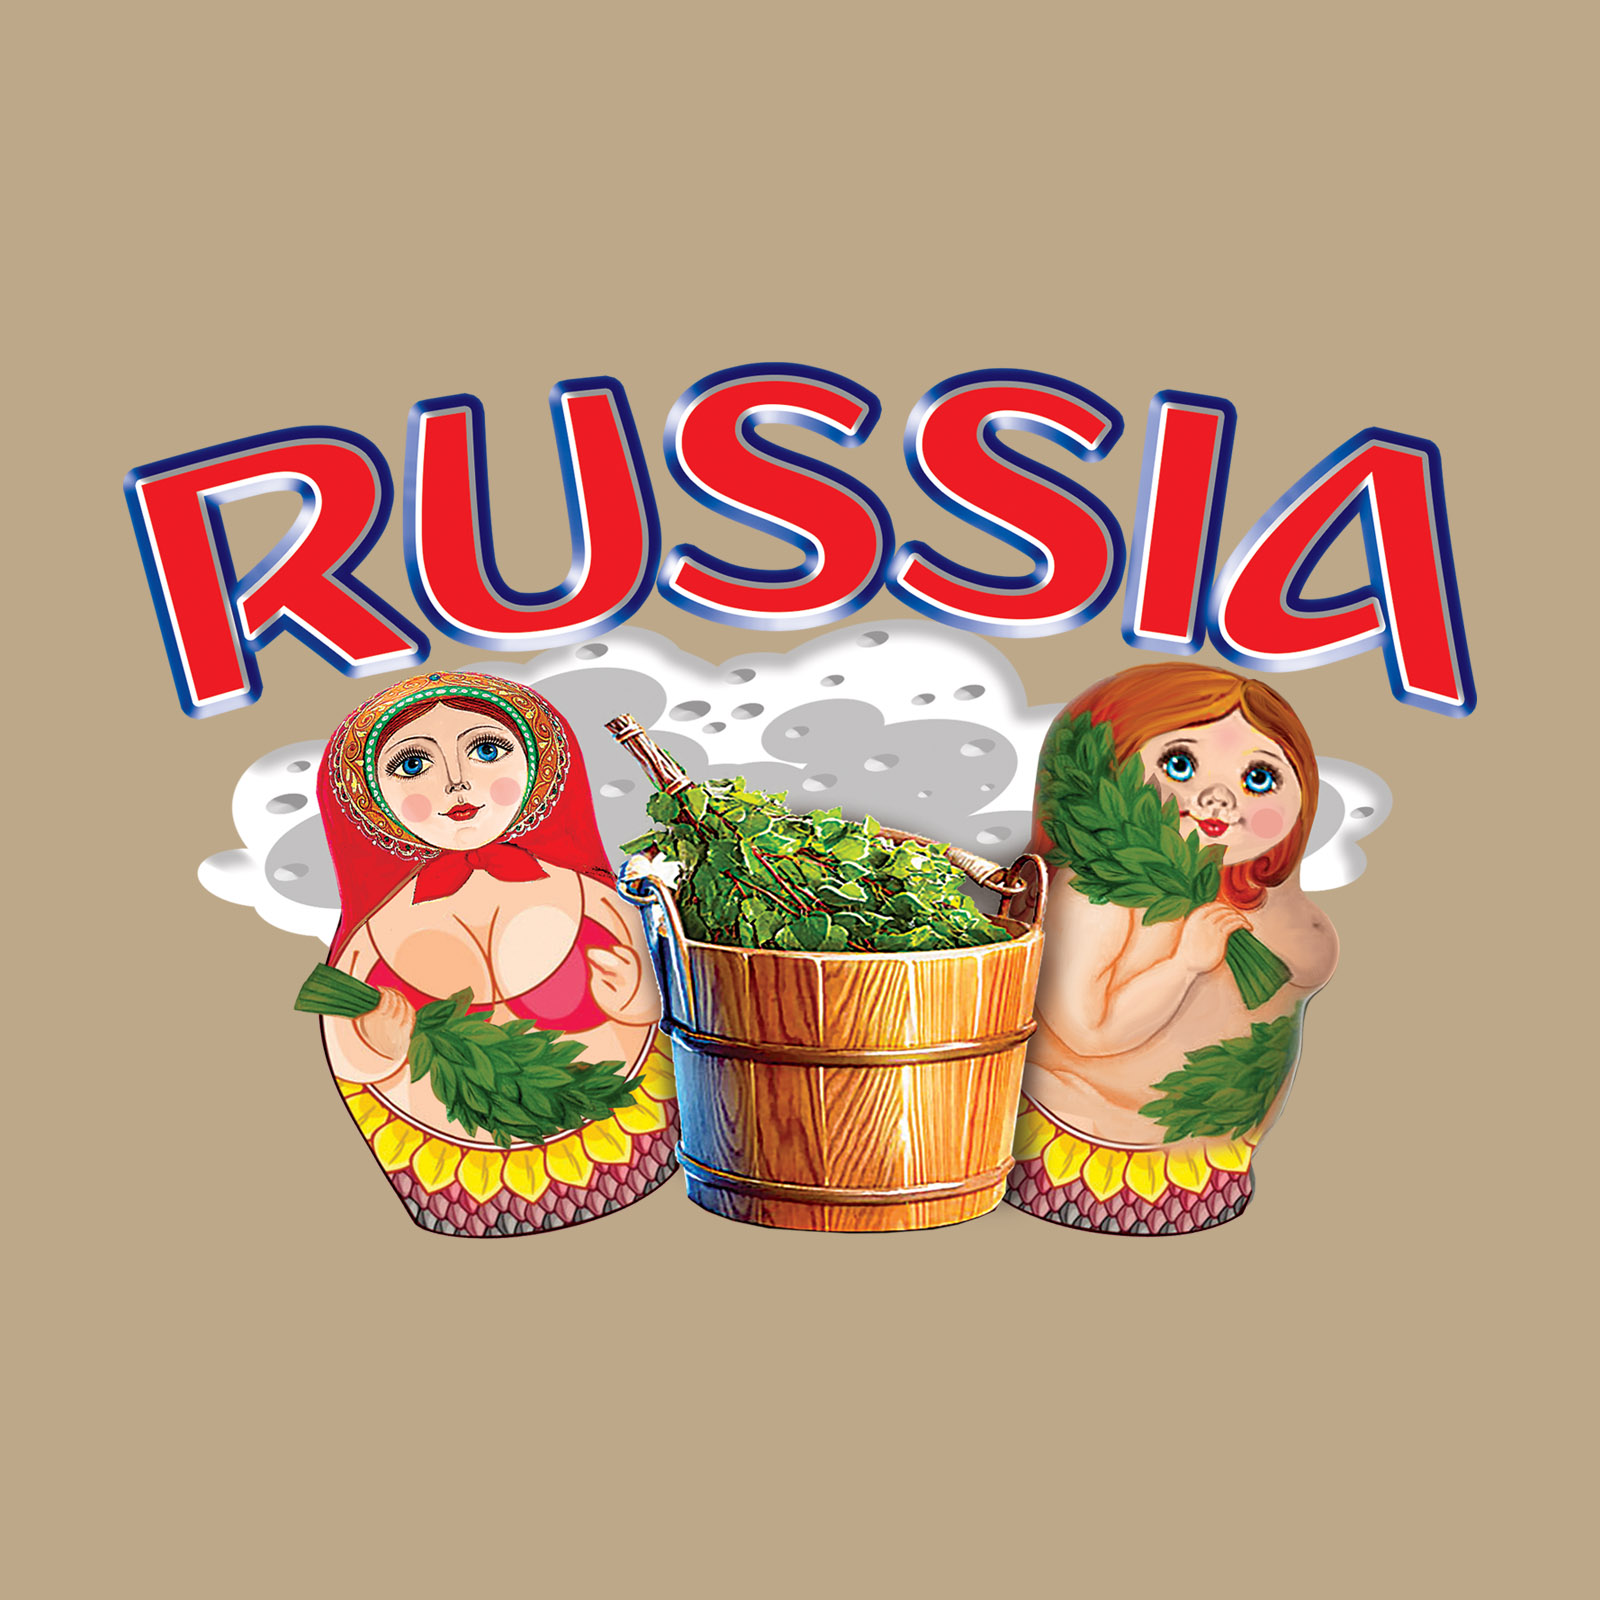 Комфортная песочная футболка Россия 